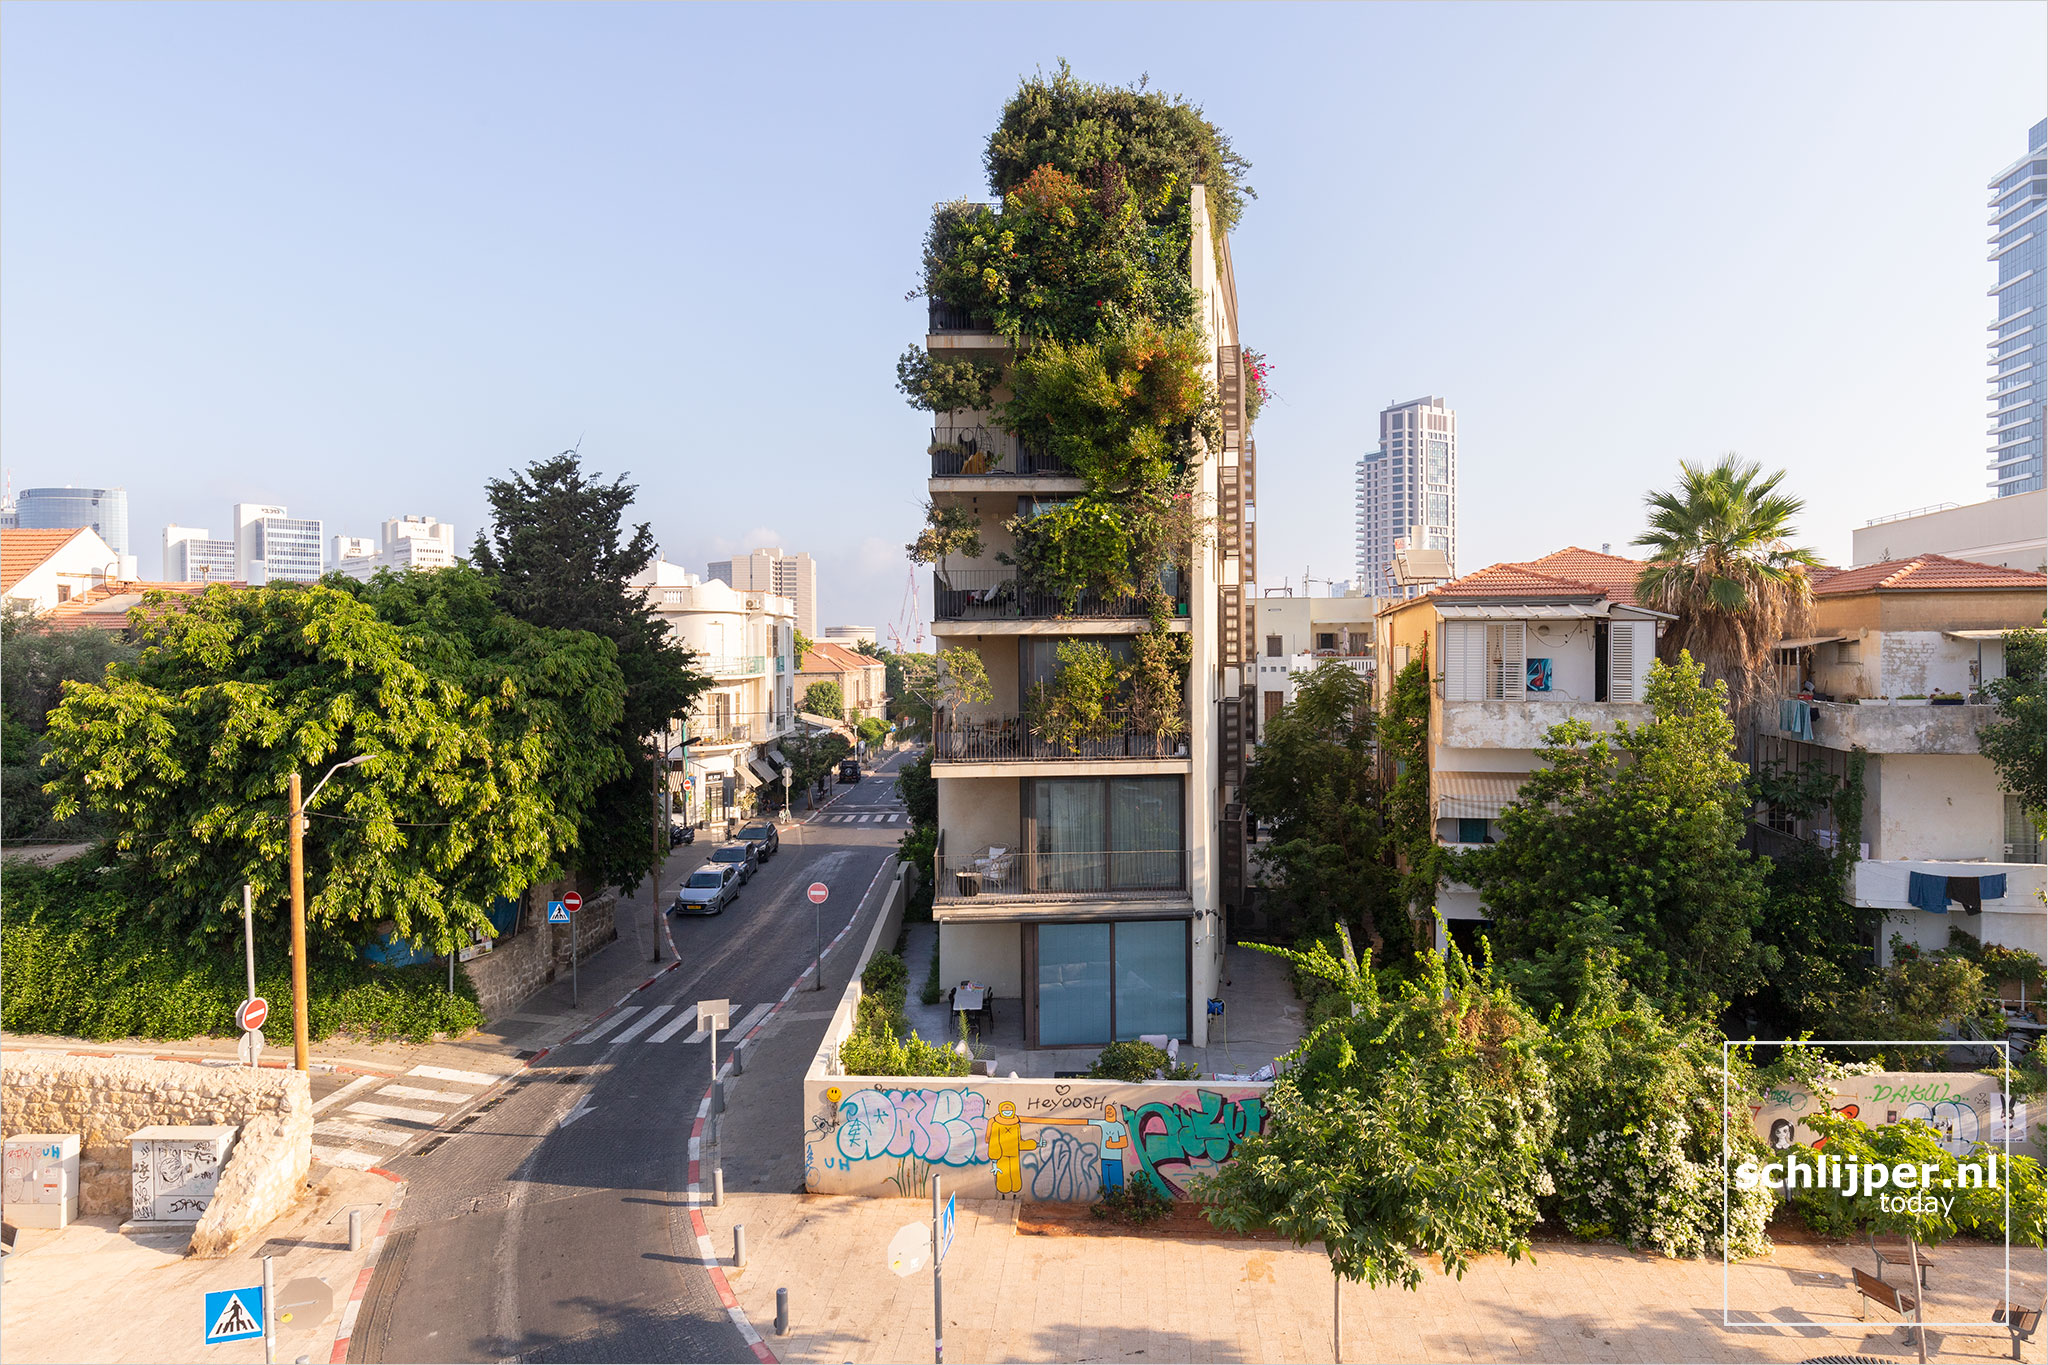 Israel, Tel Aviv, 31 juli 2022